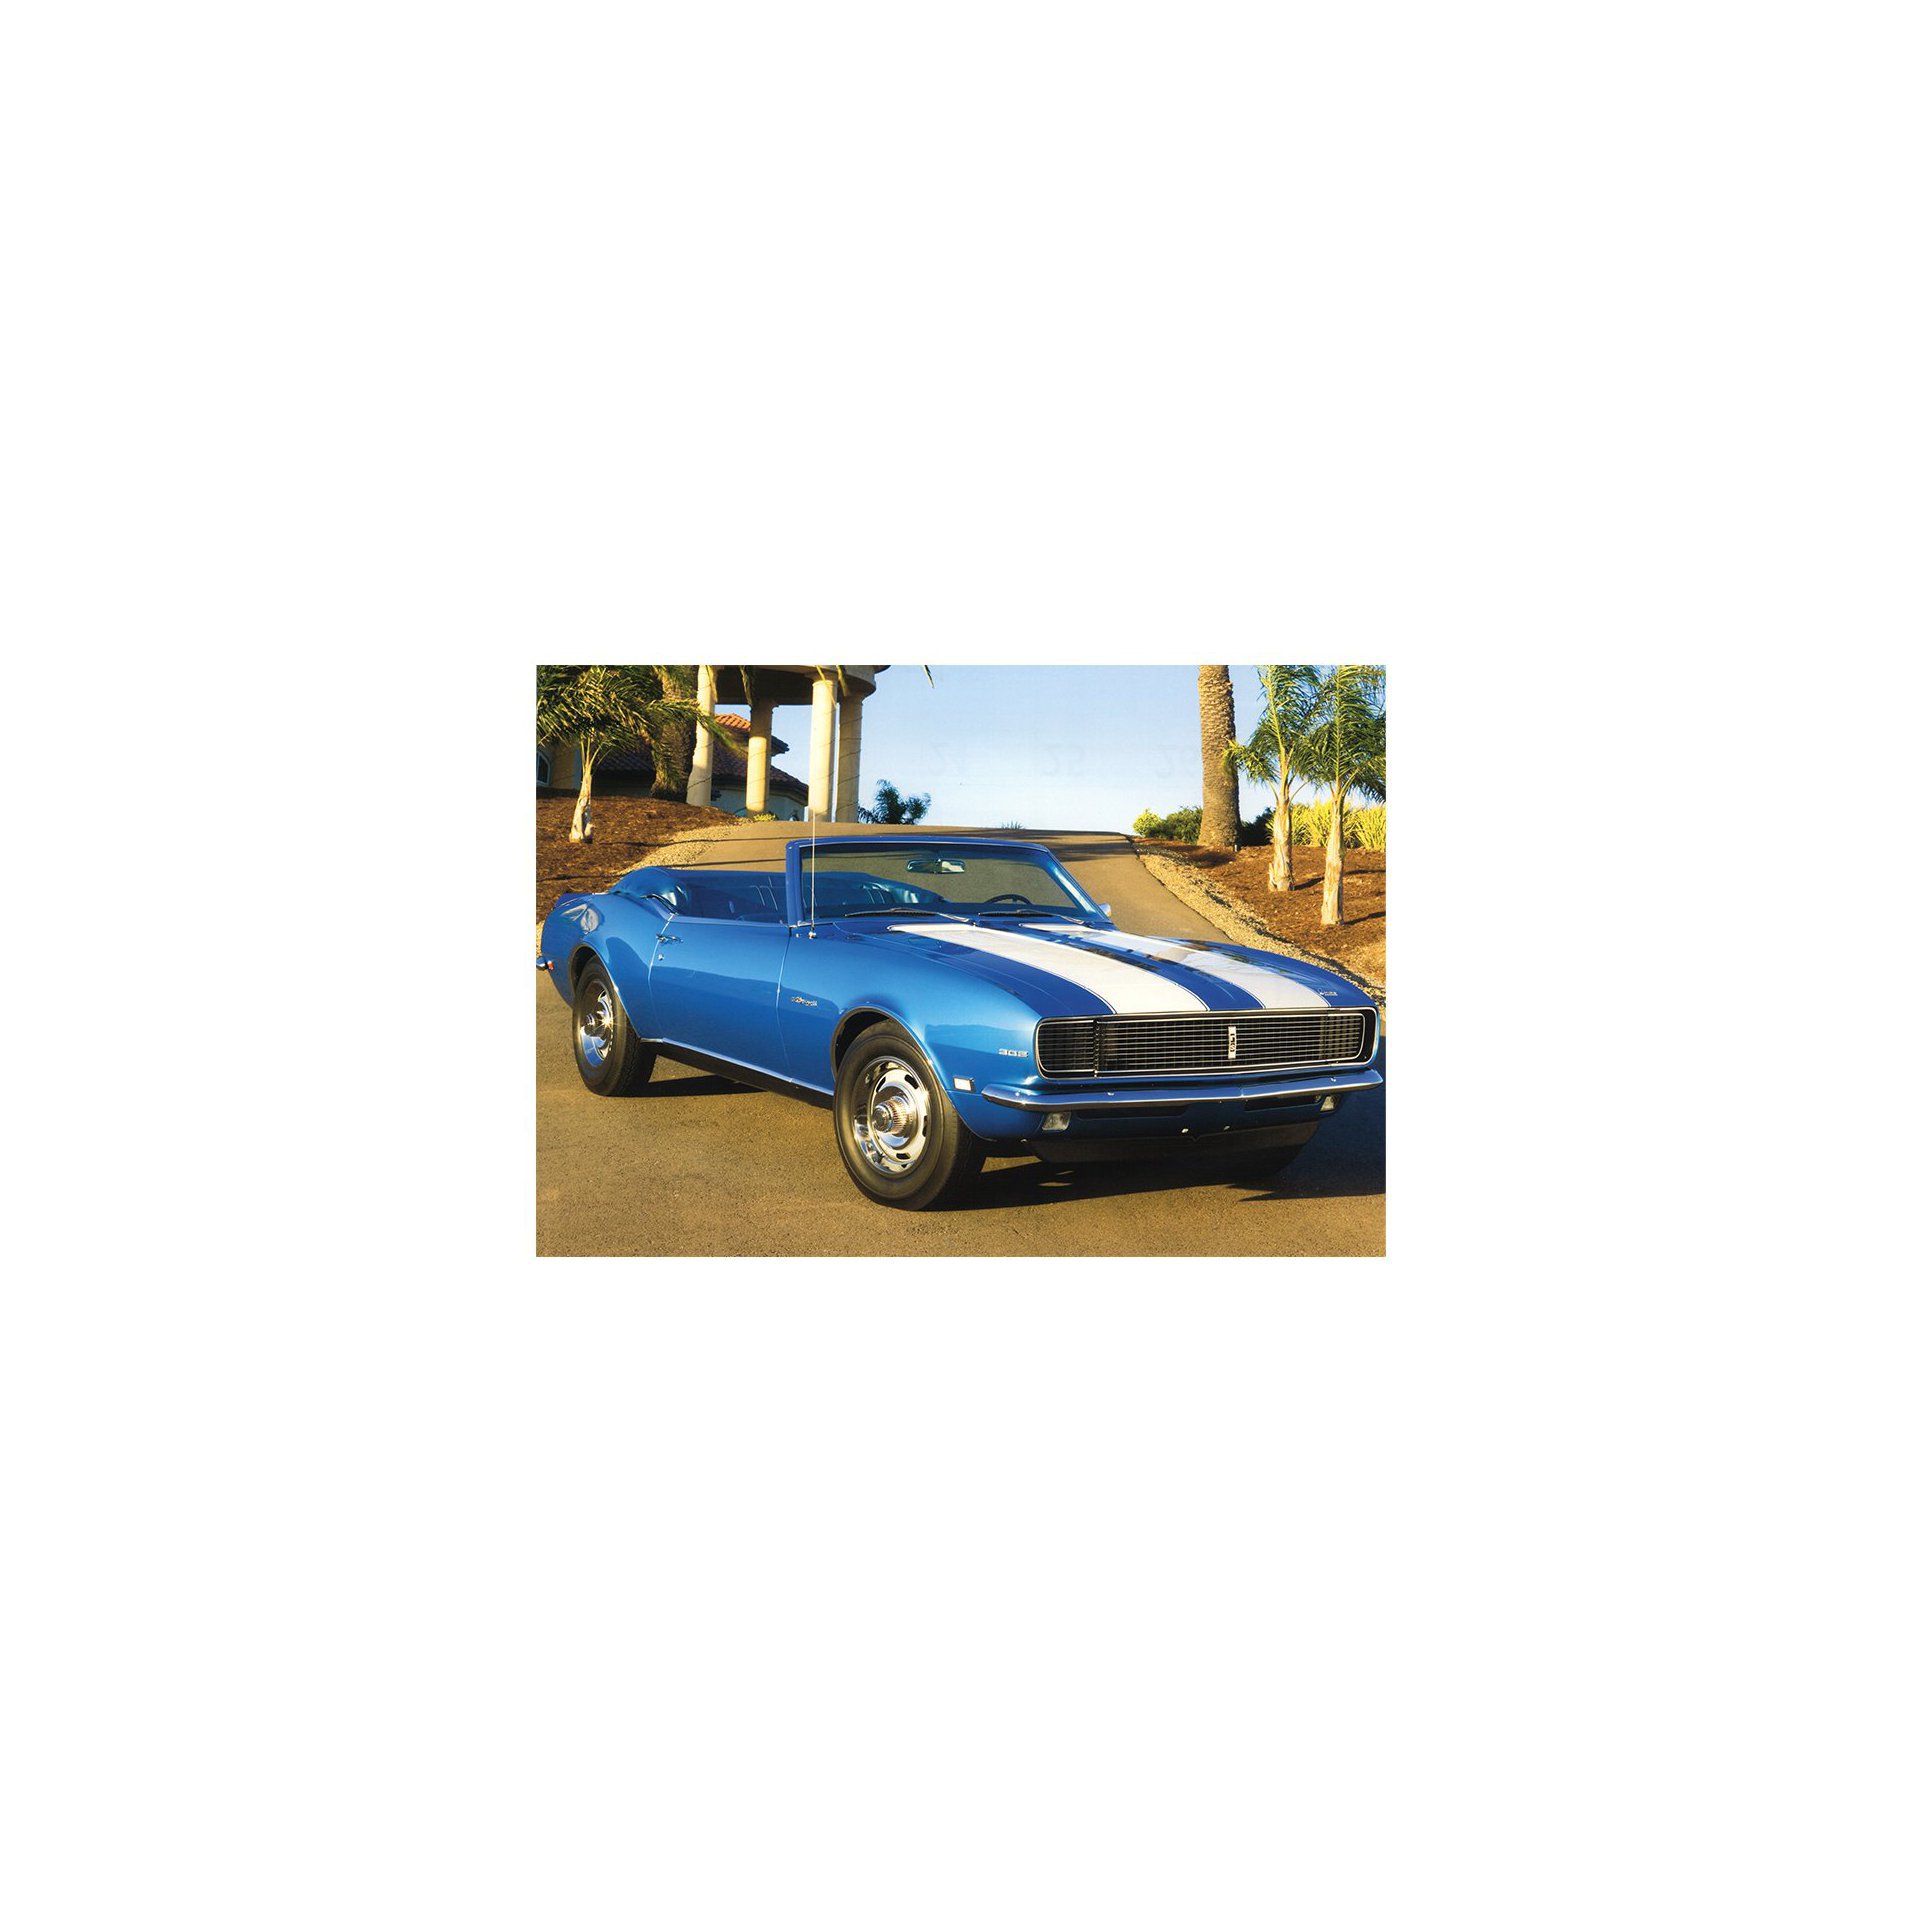 Placa All Classics Camaro 302 Azul